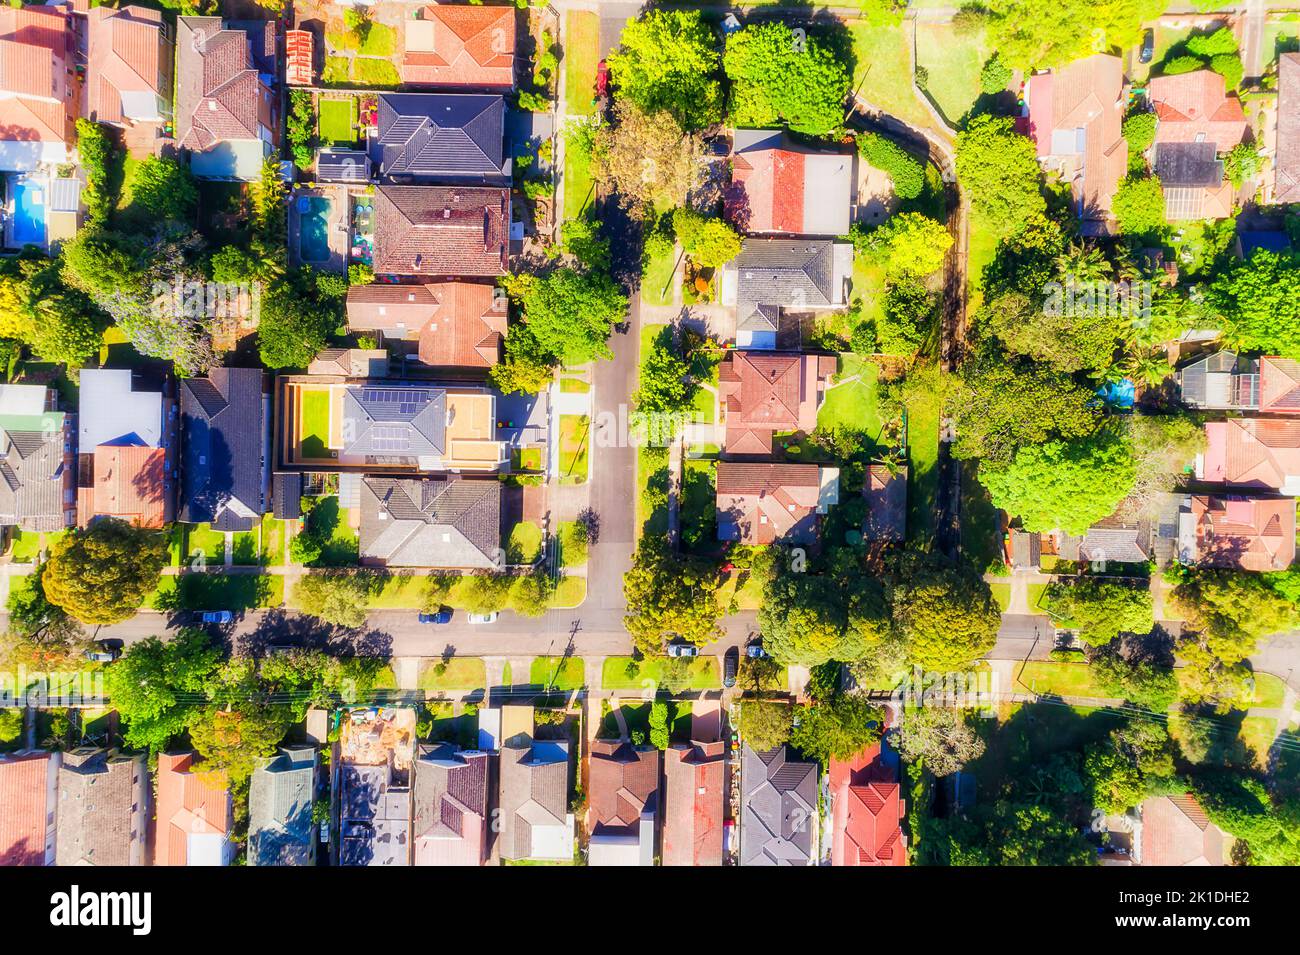 Verde residencial tranquilo suburbios de Sydney Lower North Shore - Chatswood en vista aérea de arriba abajo. Foto de stock